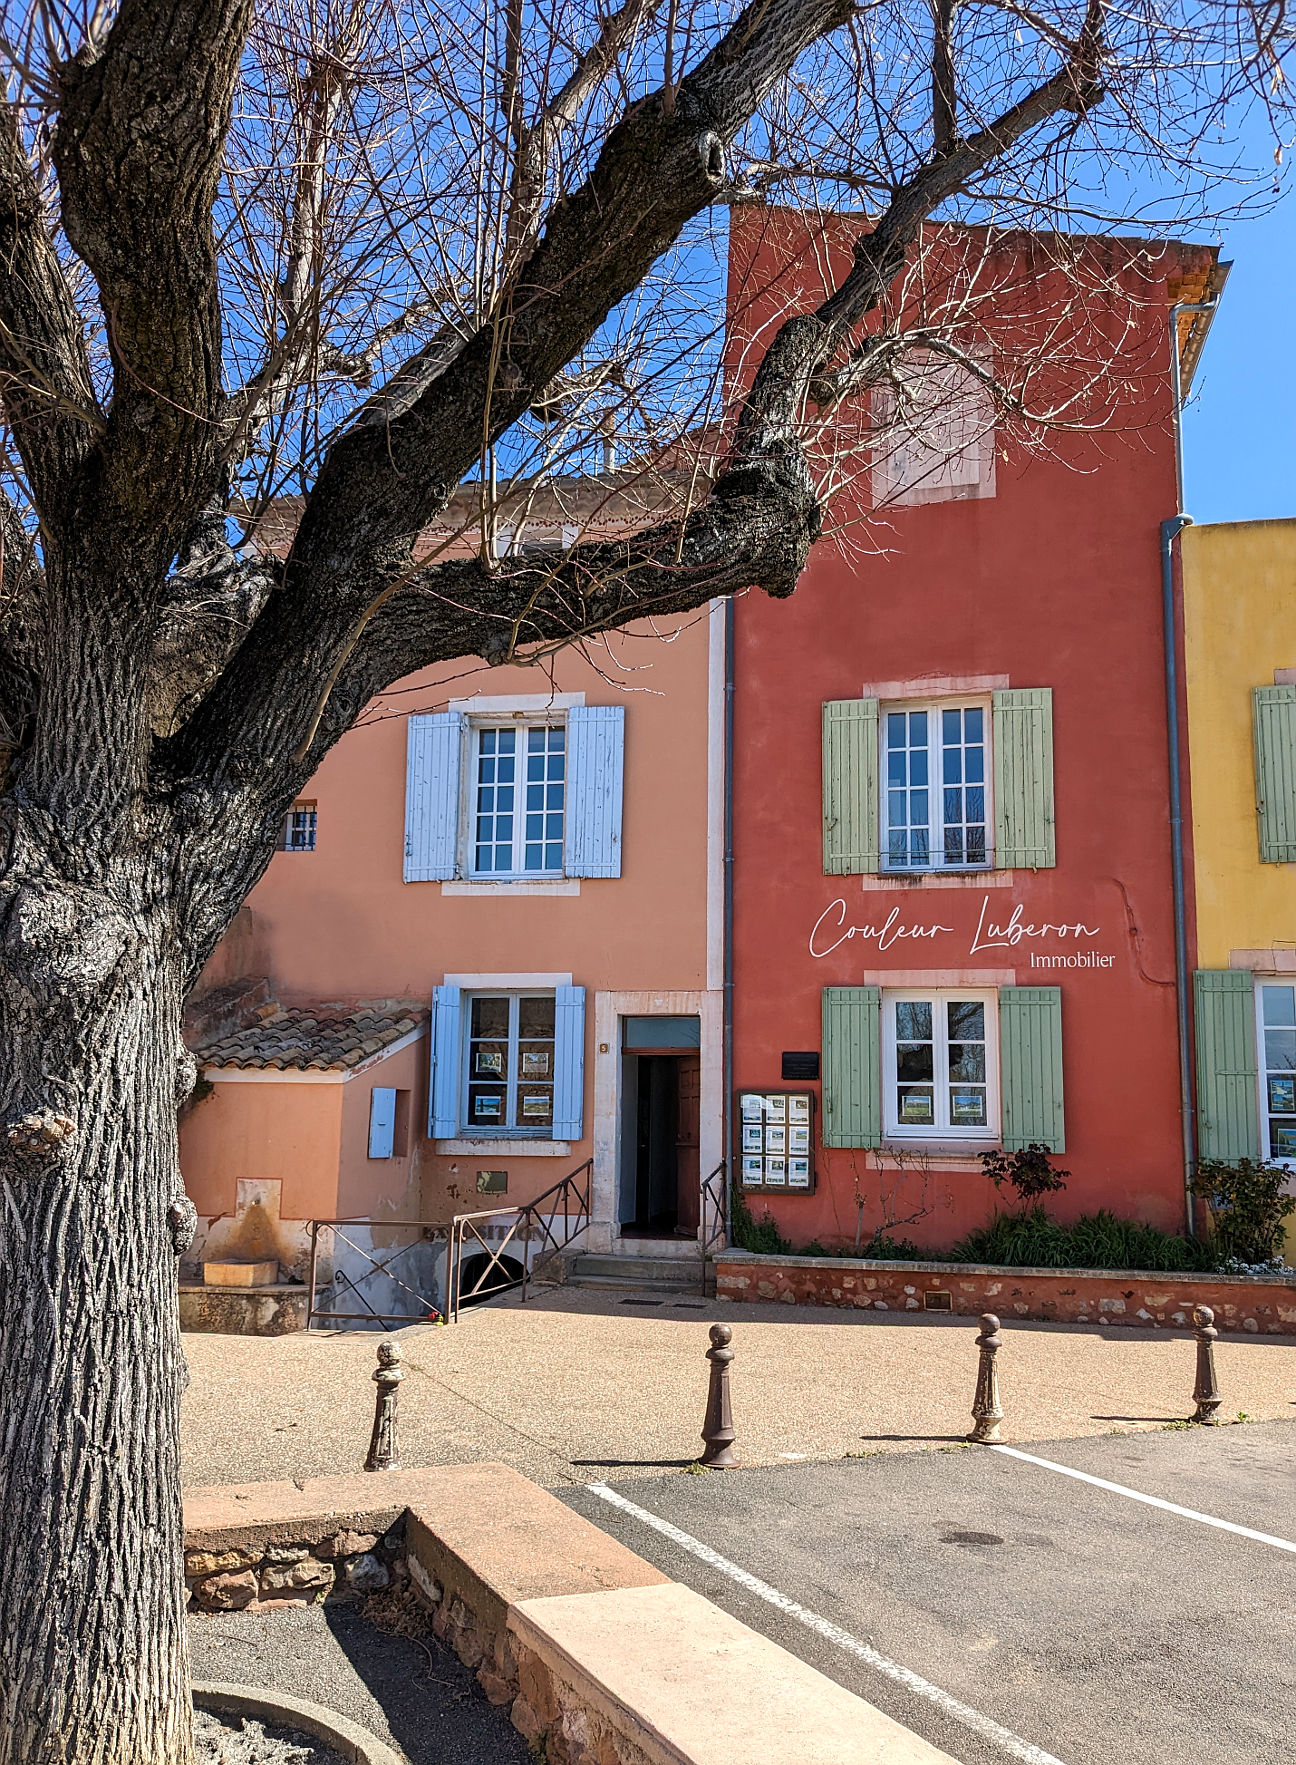 Provence schönste Orte Empfehlungen